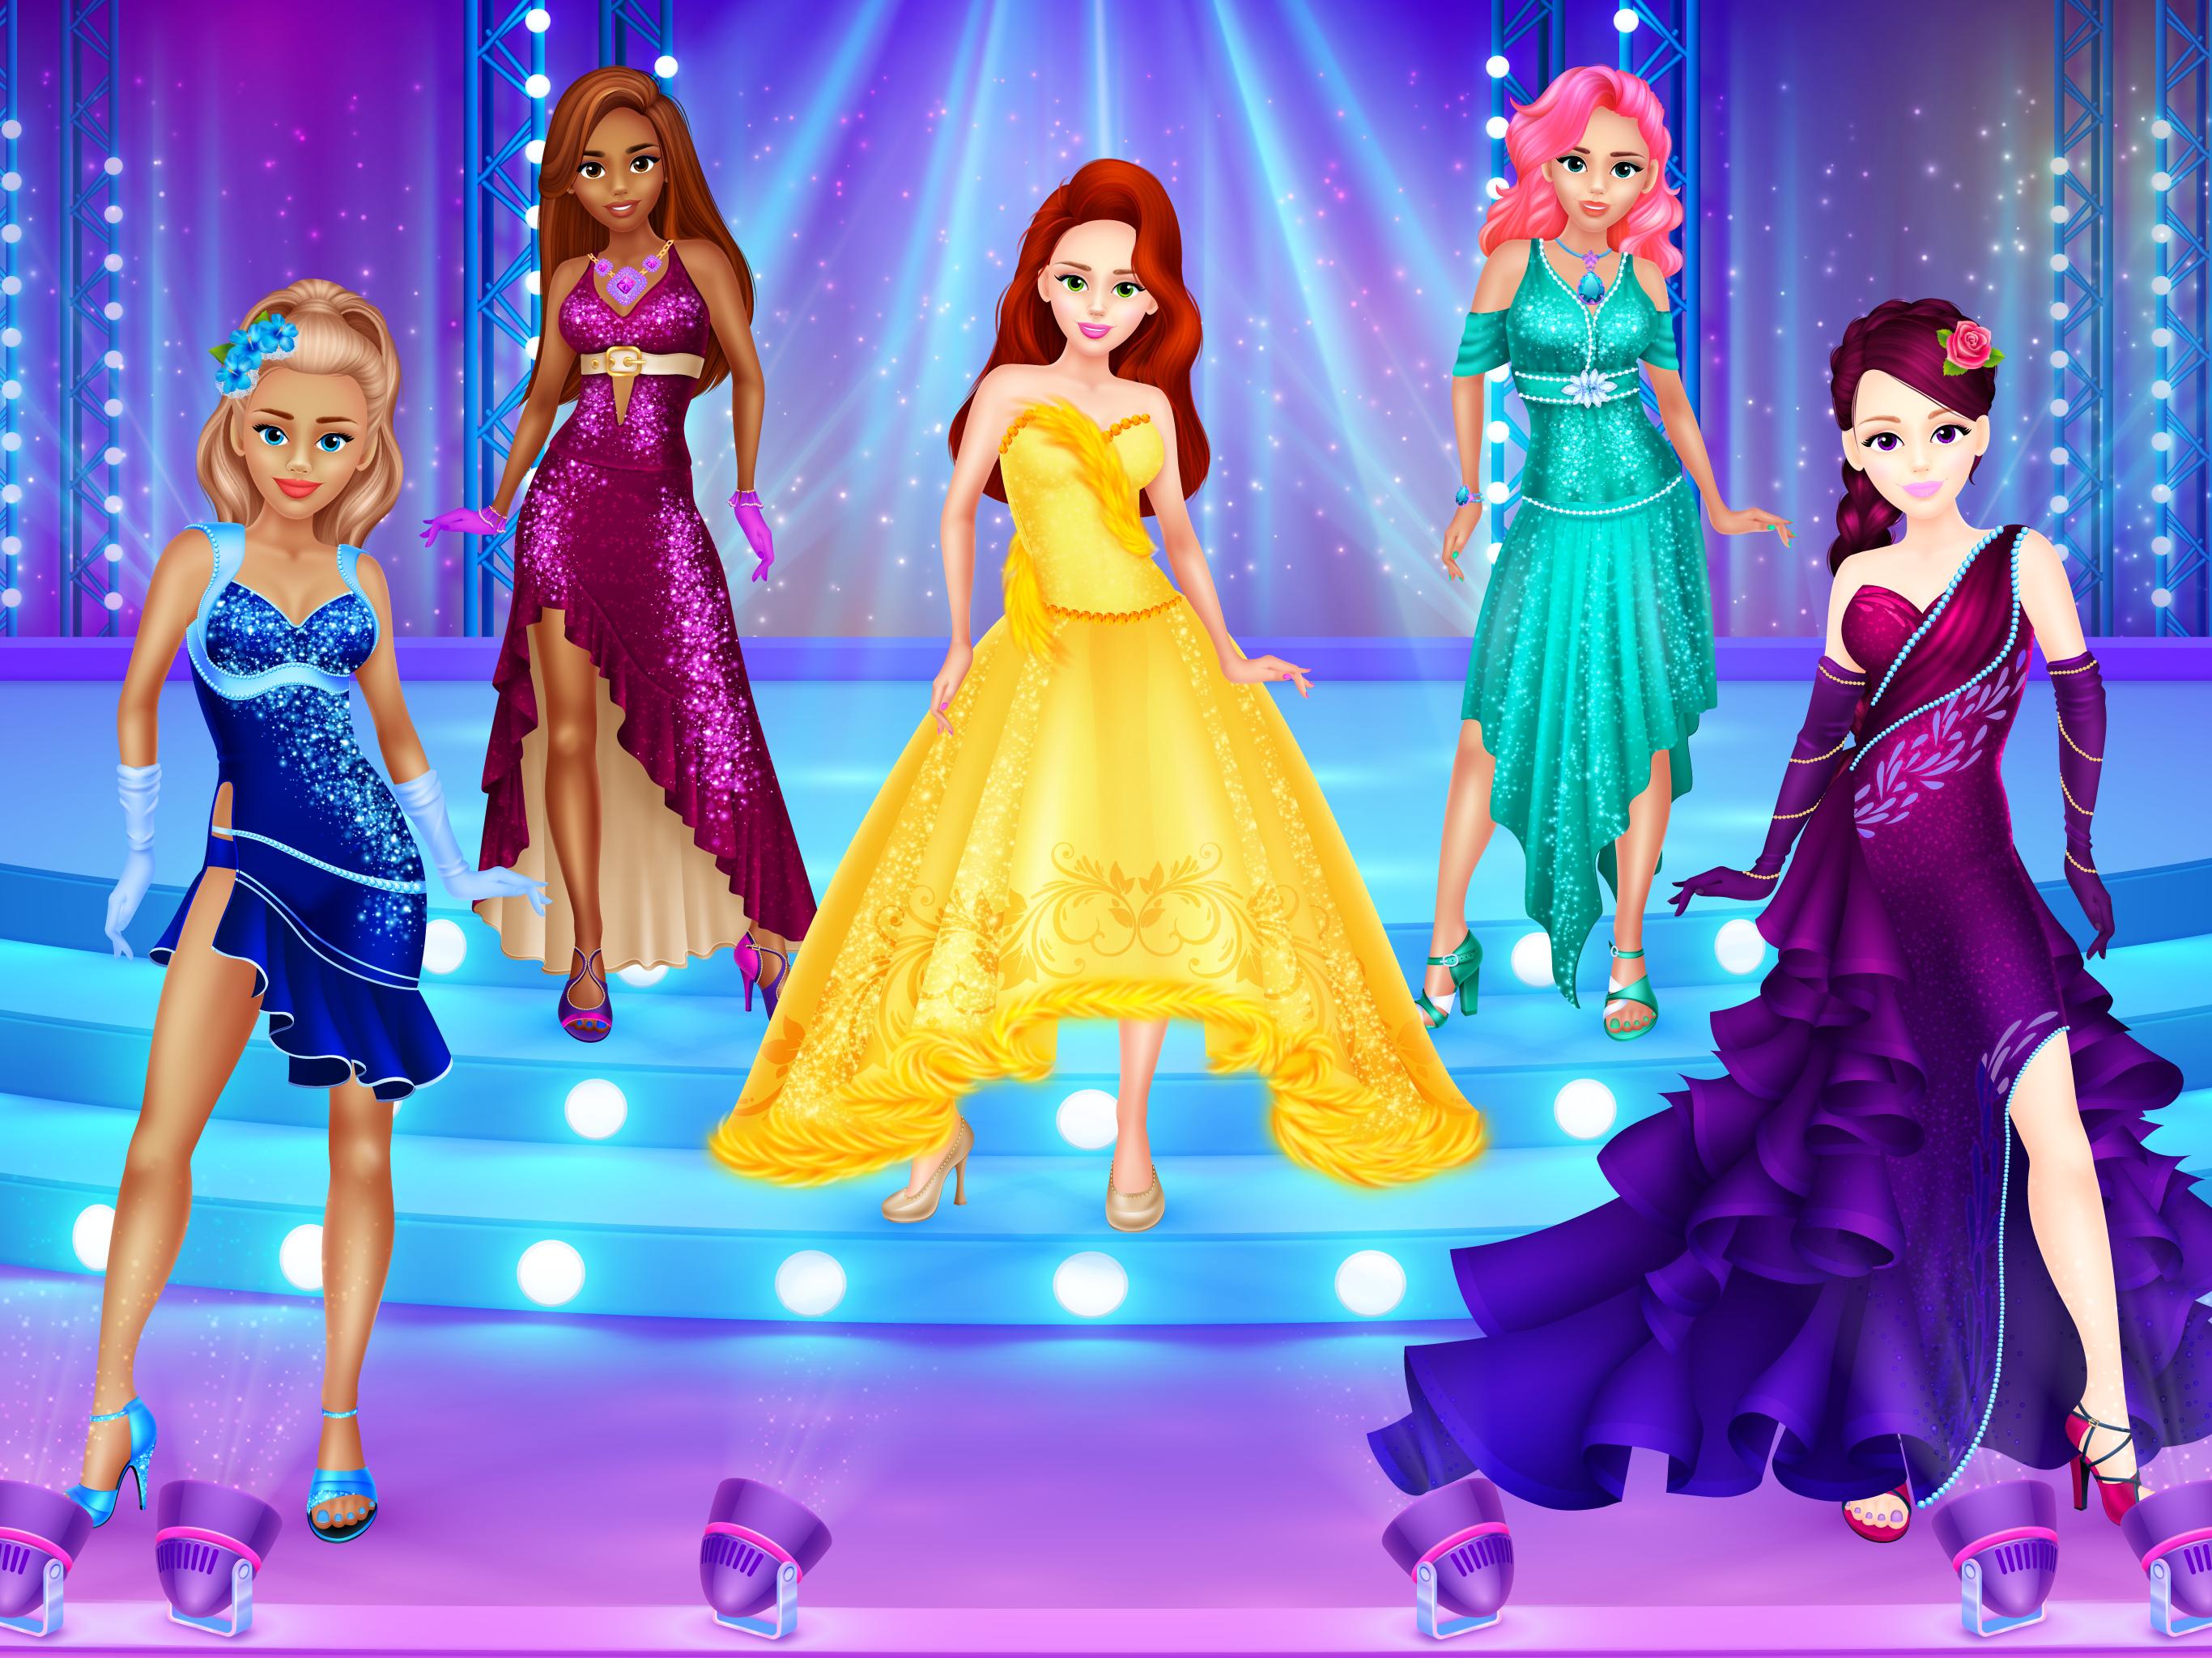 Flash girl games. Игры для девочек одевалки принцесс. Игра наряжать девочек. Одевалка вечернее платье.